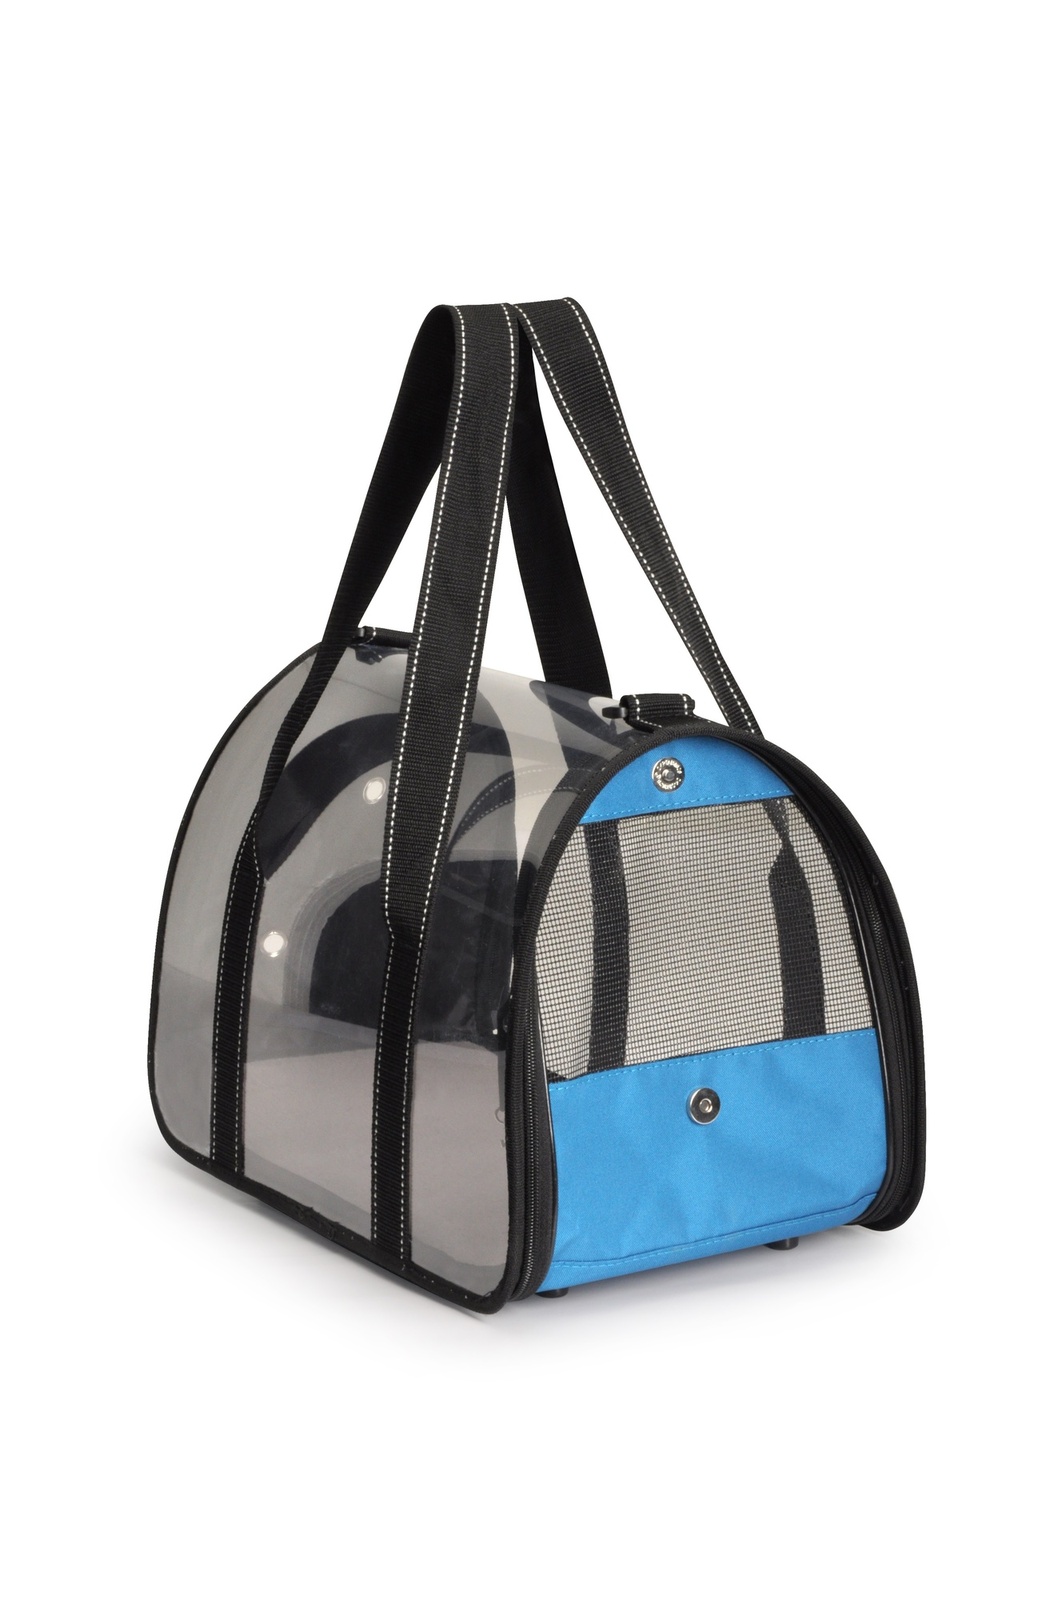 Camon Camon сумка-переноска прозрачная, 42x25x25 см, голубая (670 г) переноска для домашних животных delsey экрю